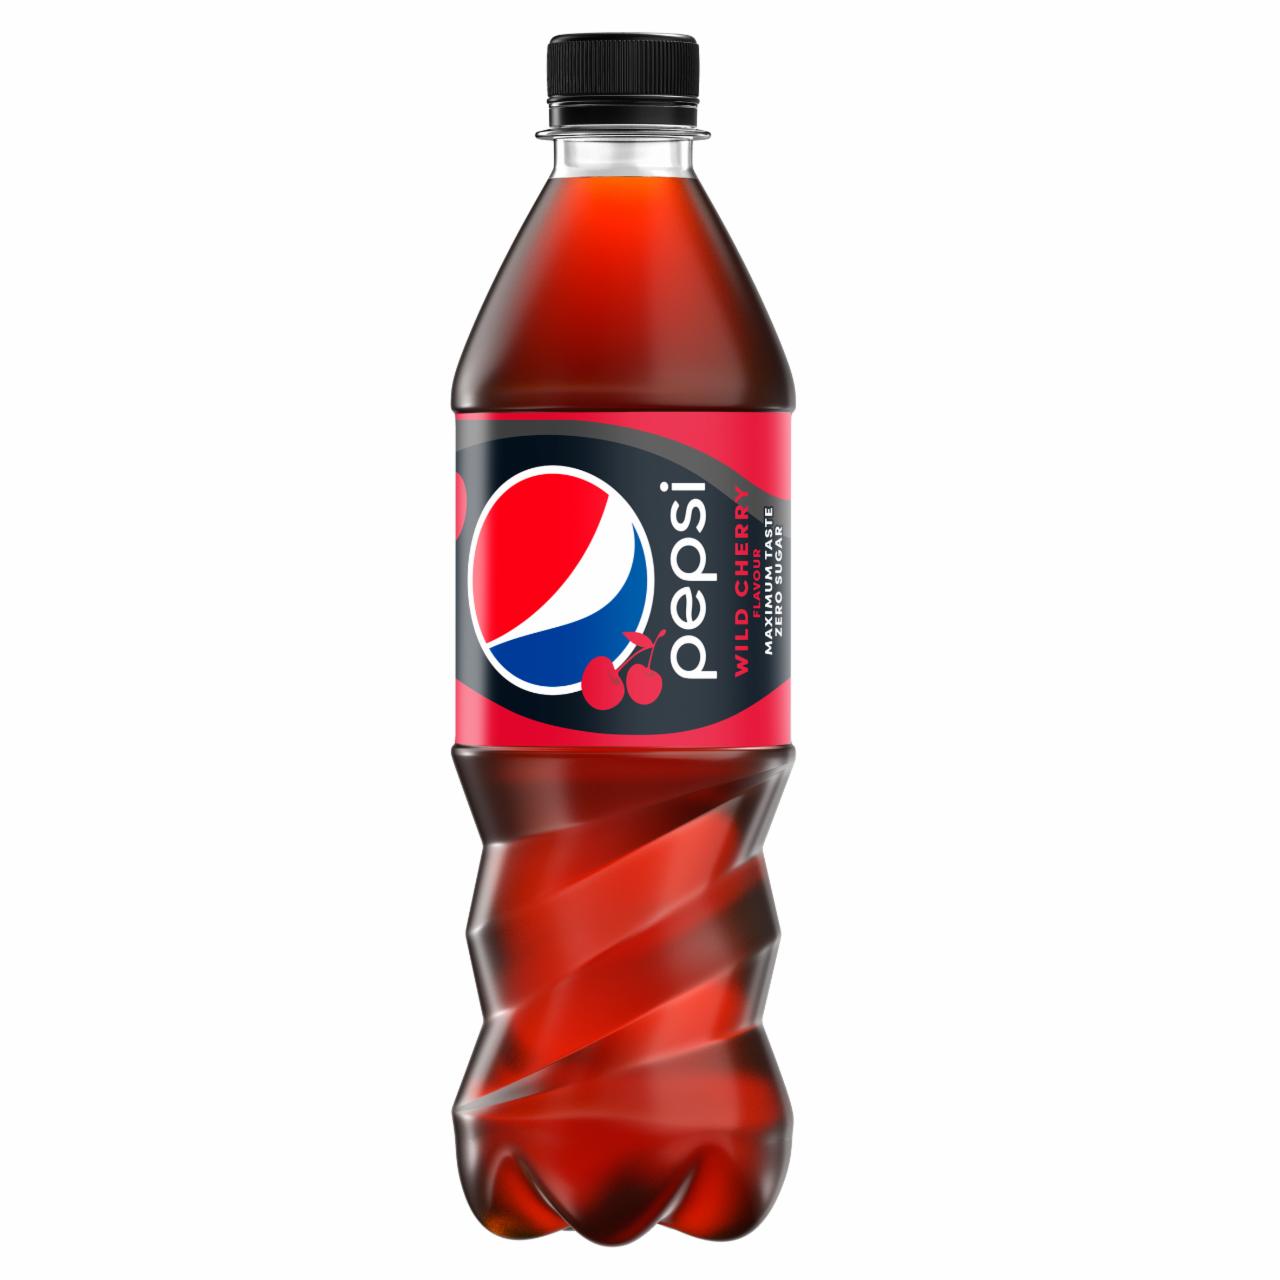 Zdjęcia - Pepsi Wild Cherry Napój gazowany 500 ml